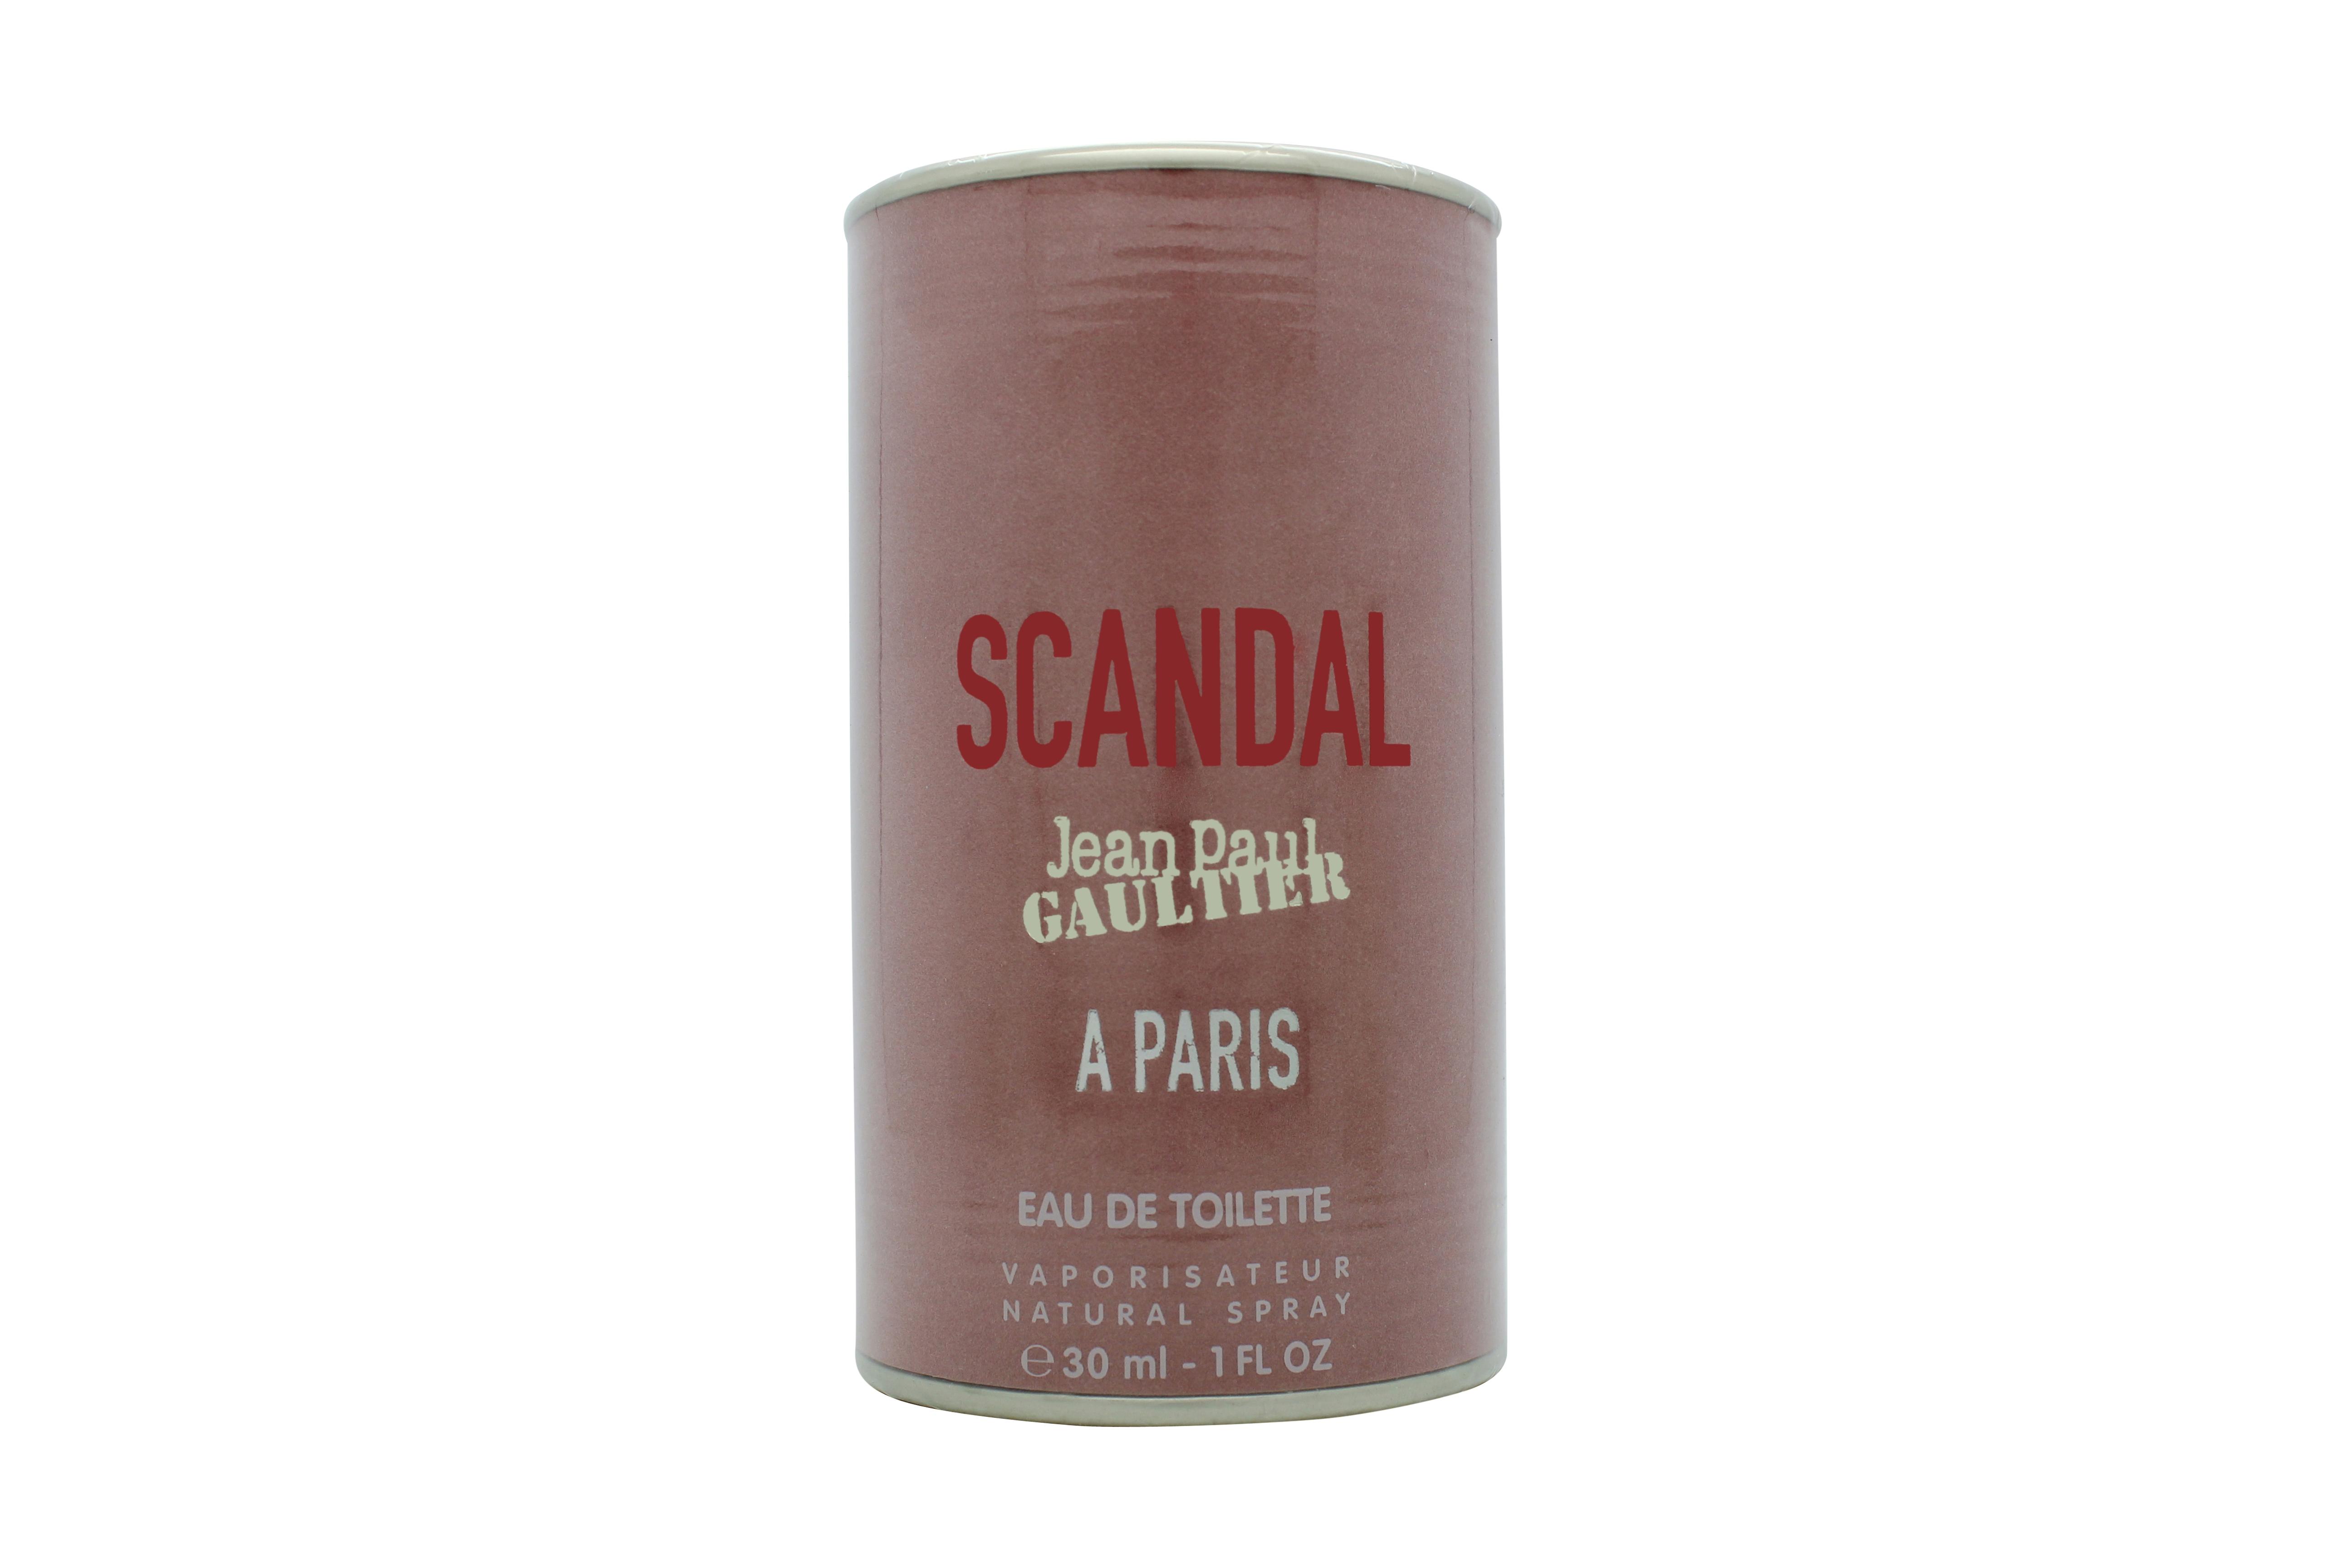 Jean Paul Gaultier Scandal A Paris Eau de Toilette 30ml Spray